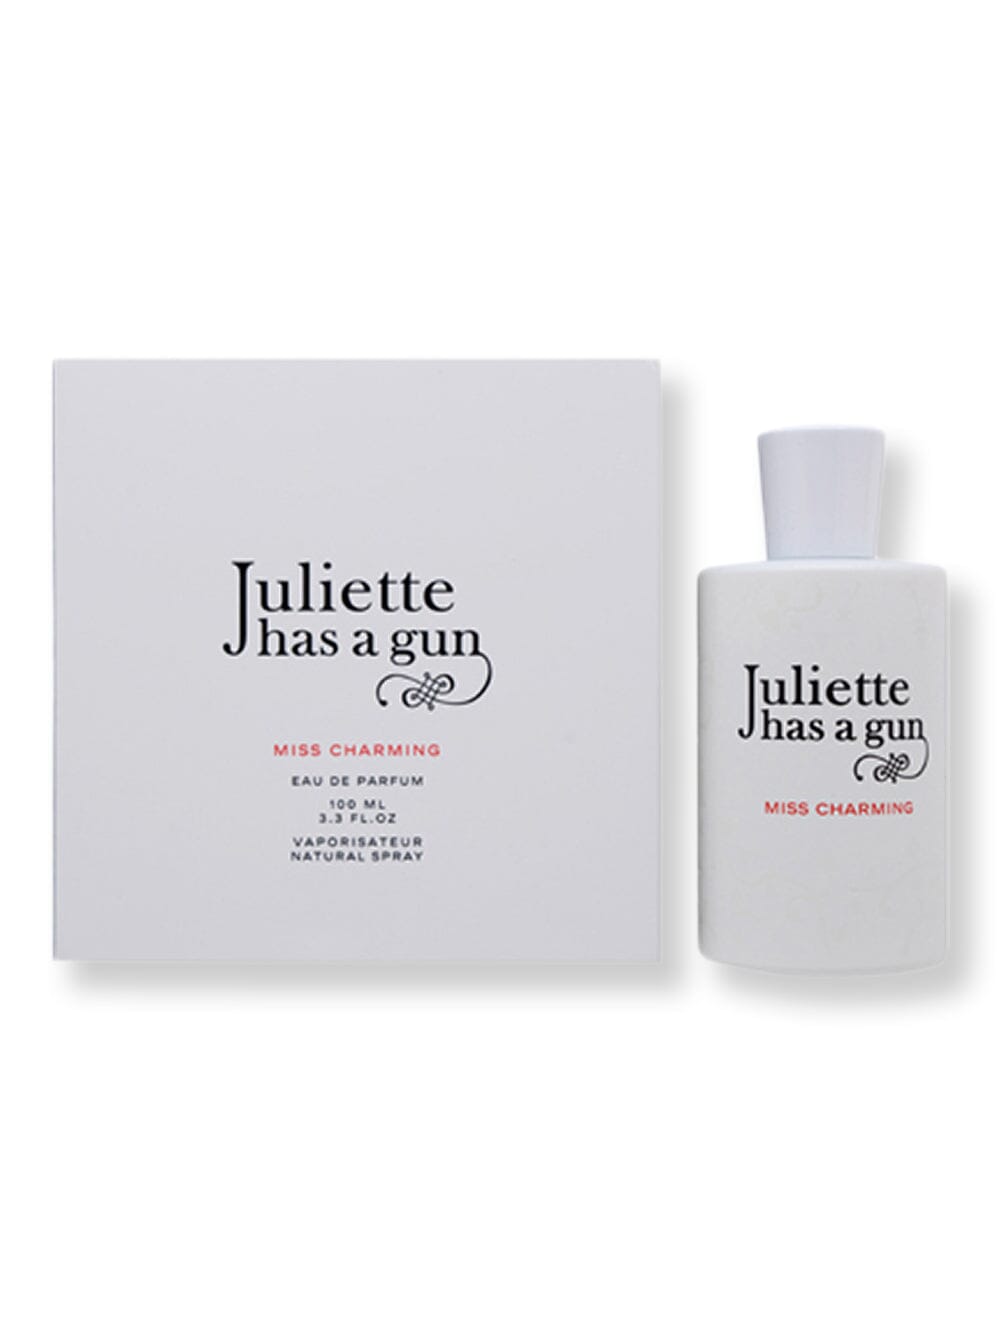 Juliette has a Gun Juliette has a Gun Miss Charming Has A Gun EDP Spray 3.3 oz100 ml Perfume 